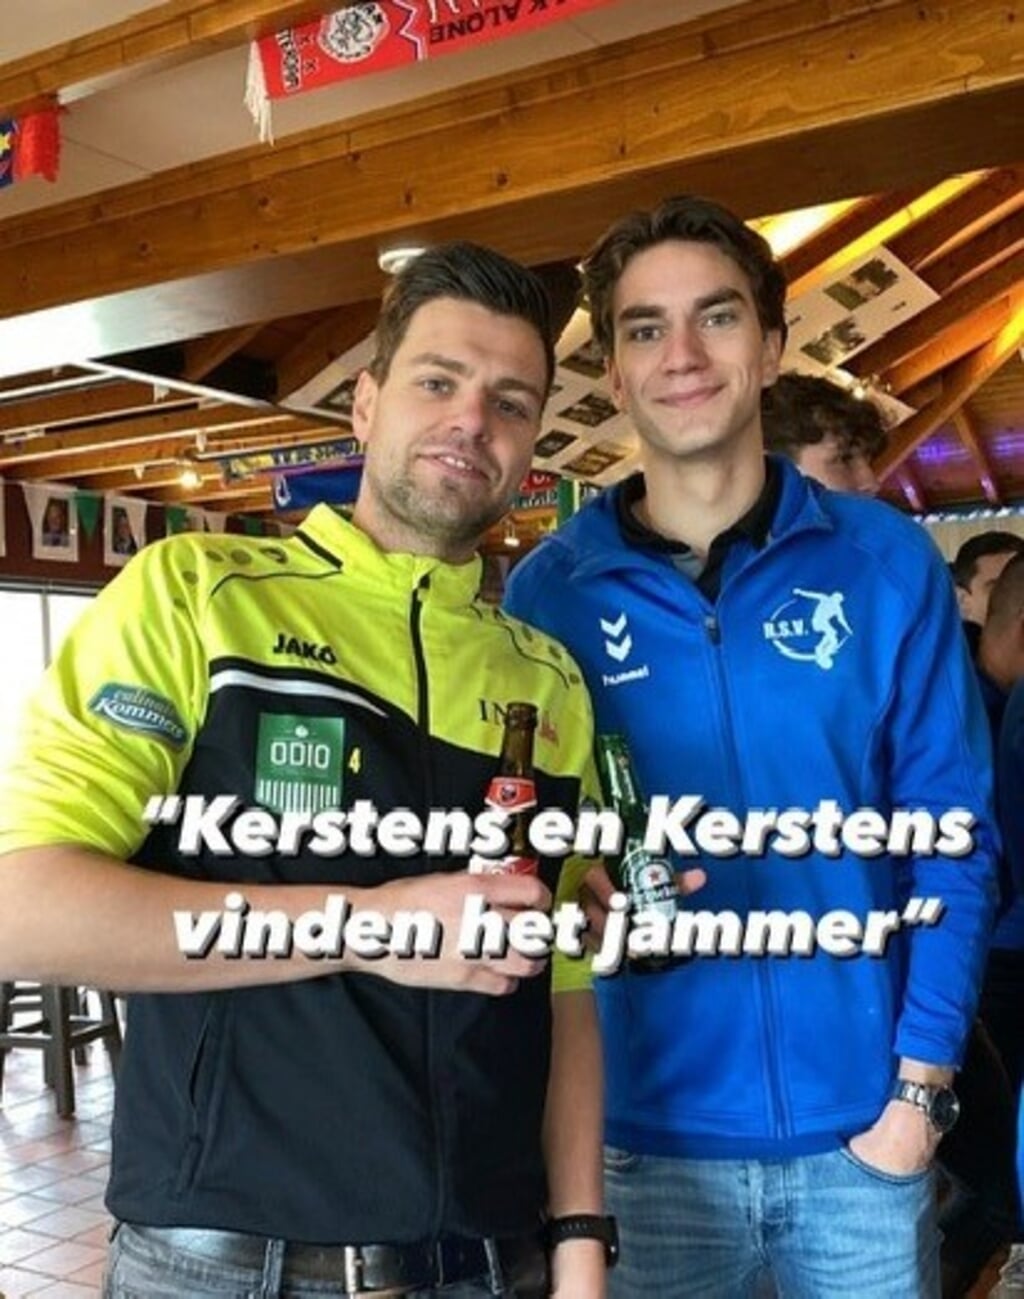 Sander Kerstens versus Stijn Kerstens afgelast